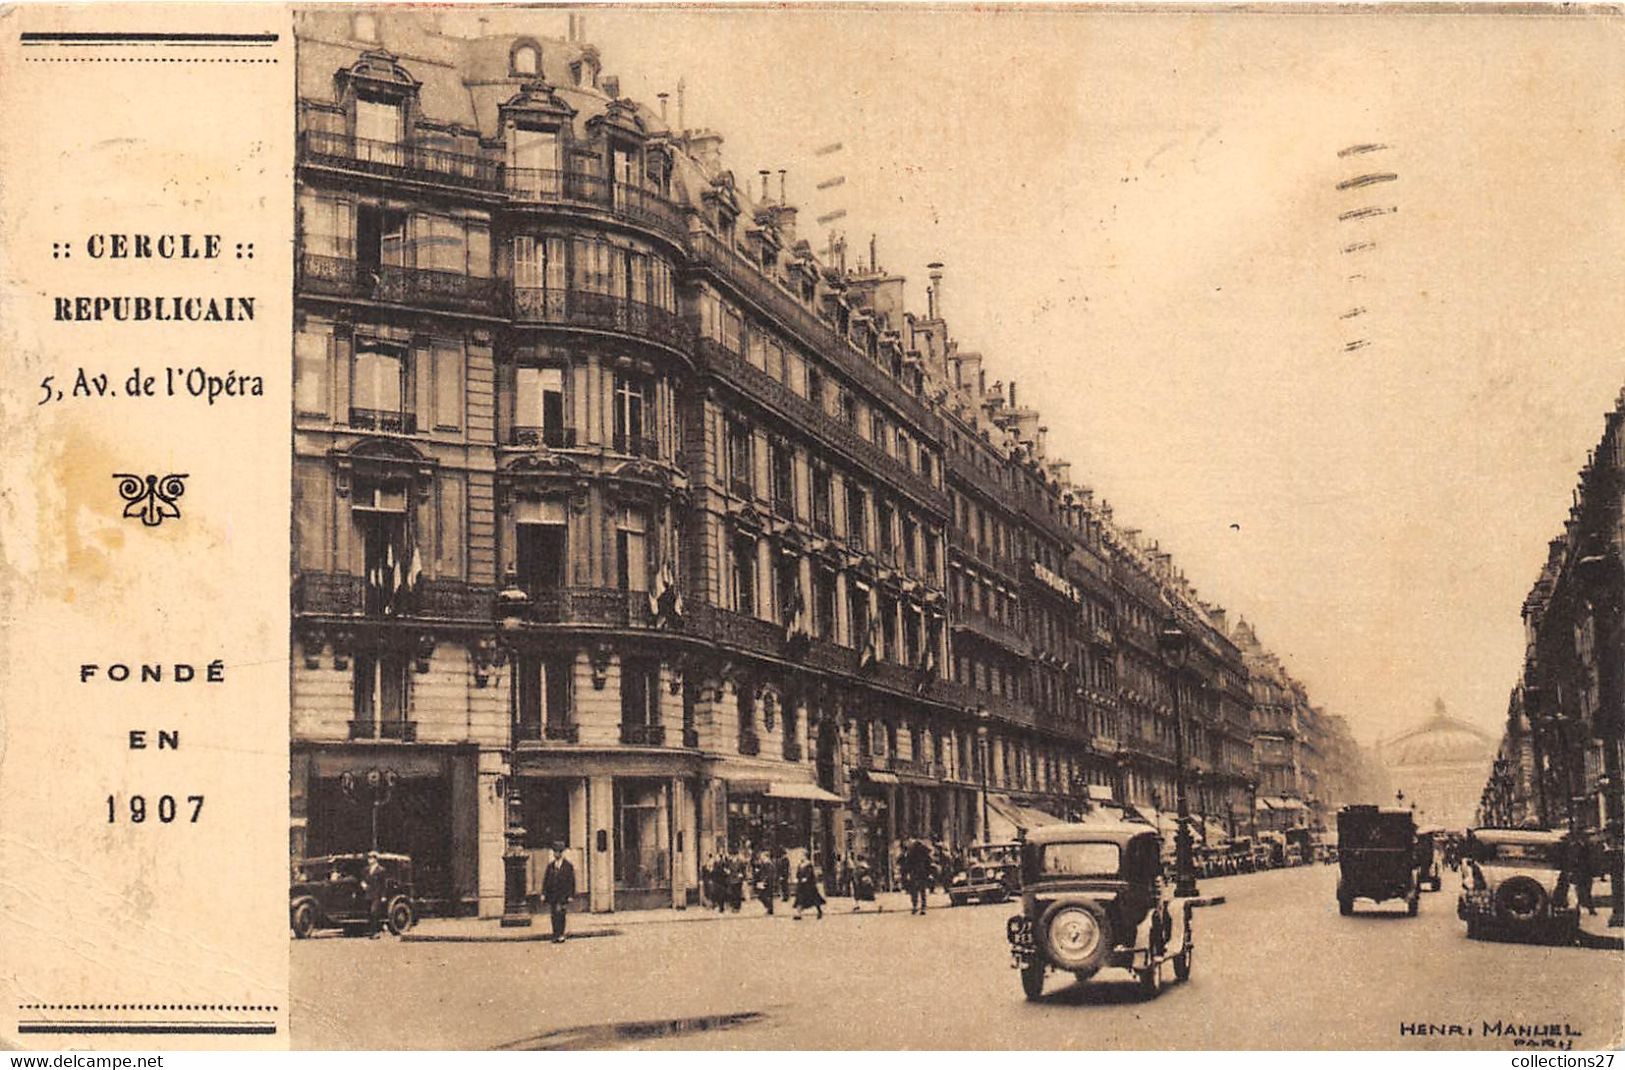 PARIS-75001-CERCLE REPUBLICAIN 5 AVENUE DE L'OPERA FONDE EN 1907 - Paris (01)